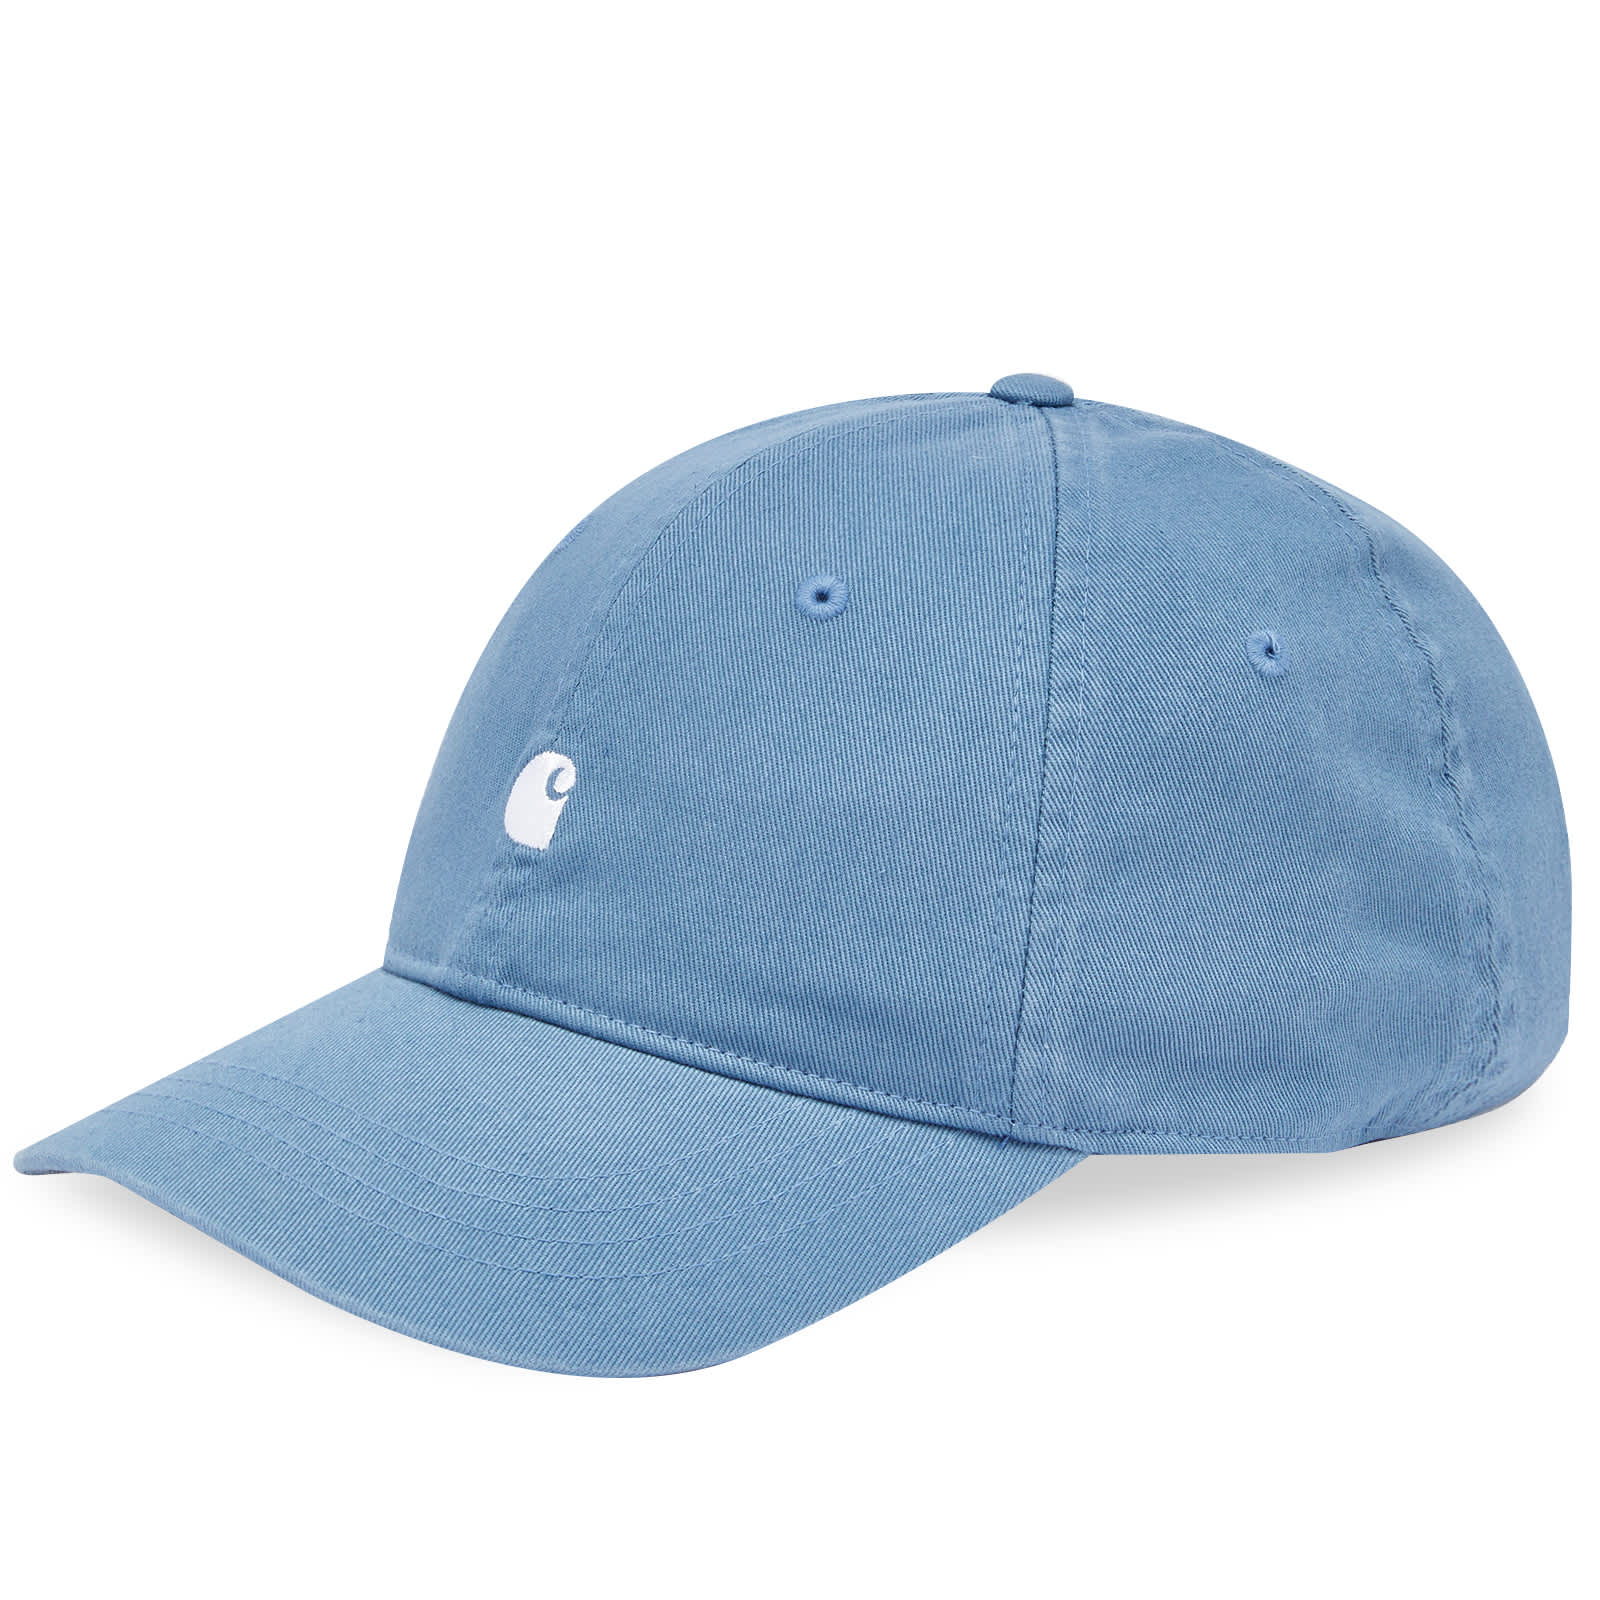 Бейсболка Carhartt Wip Madison Logo, цвет Vancouver Blue & White бейсболка женская мятная кепка однотонная классическая